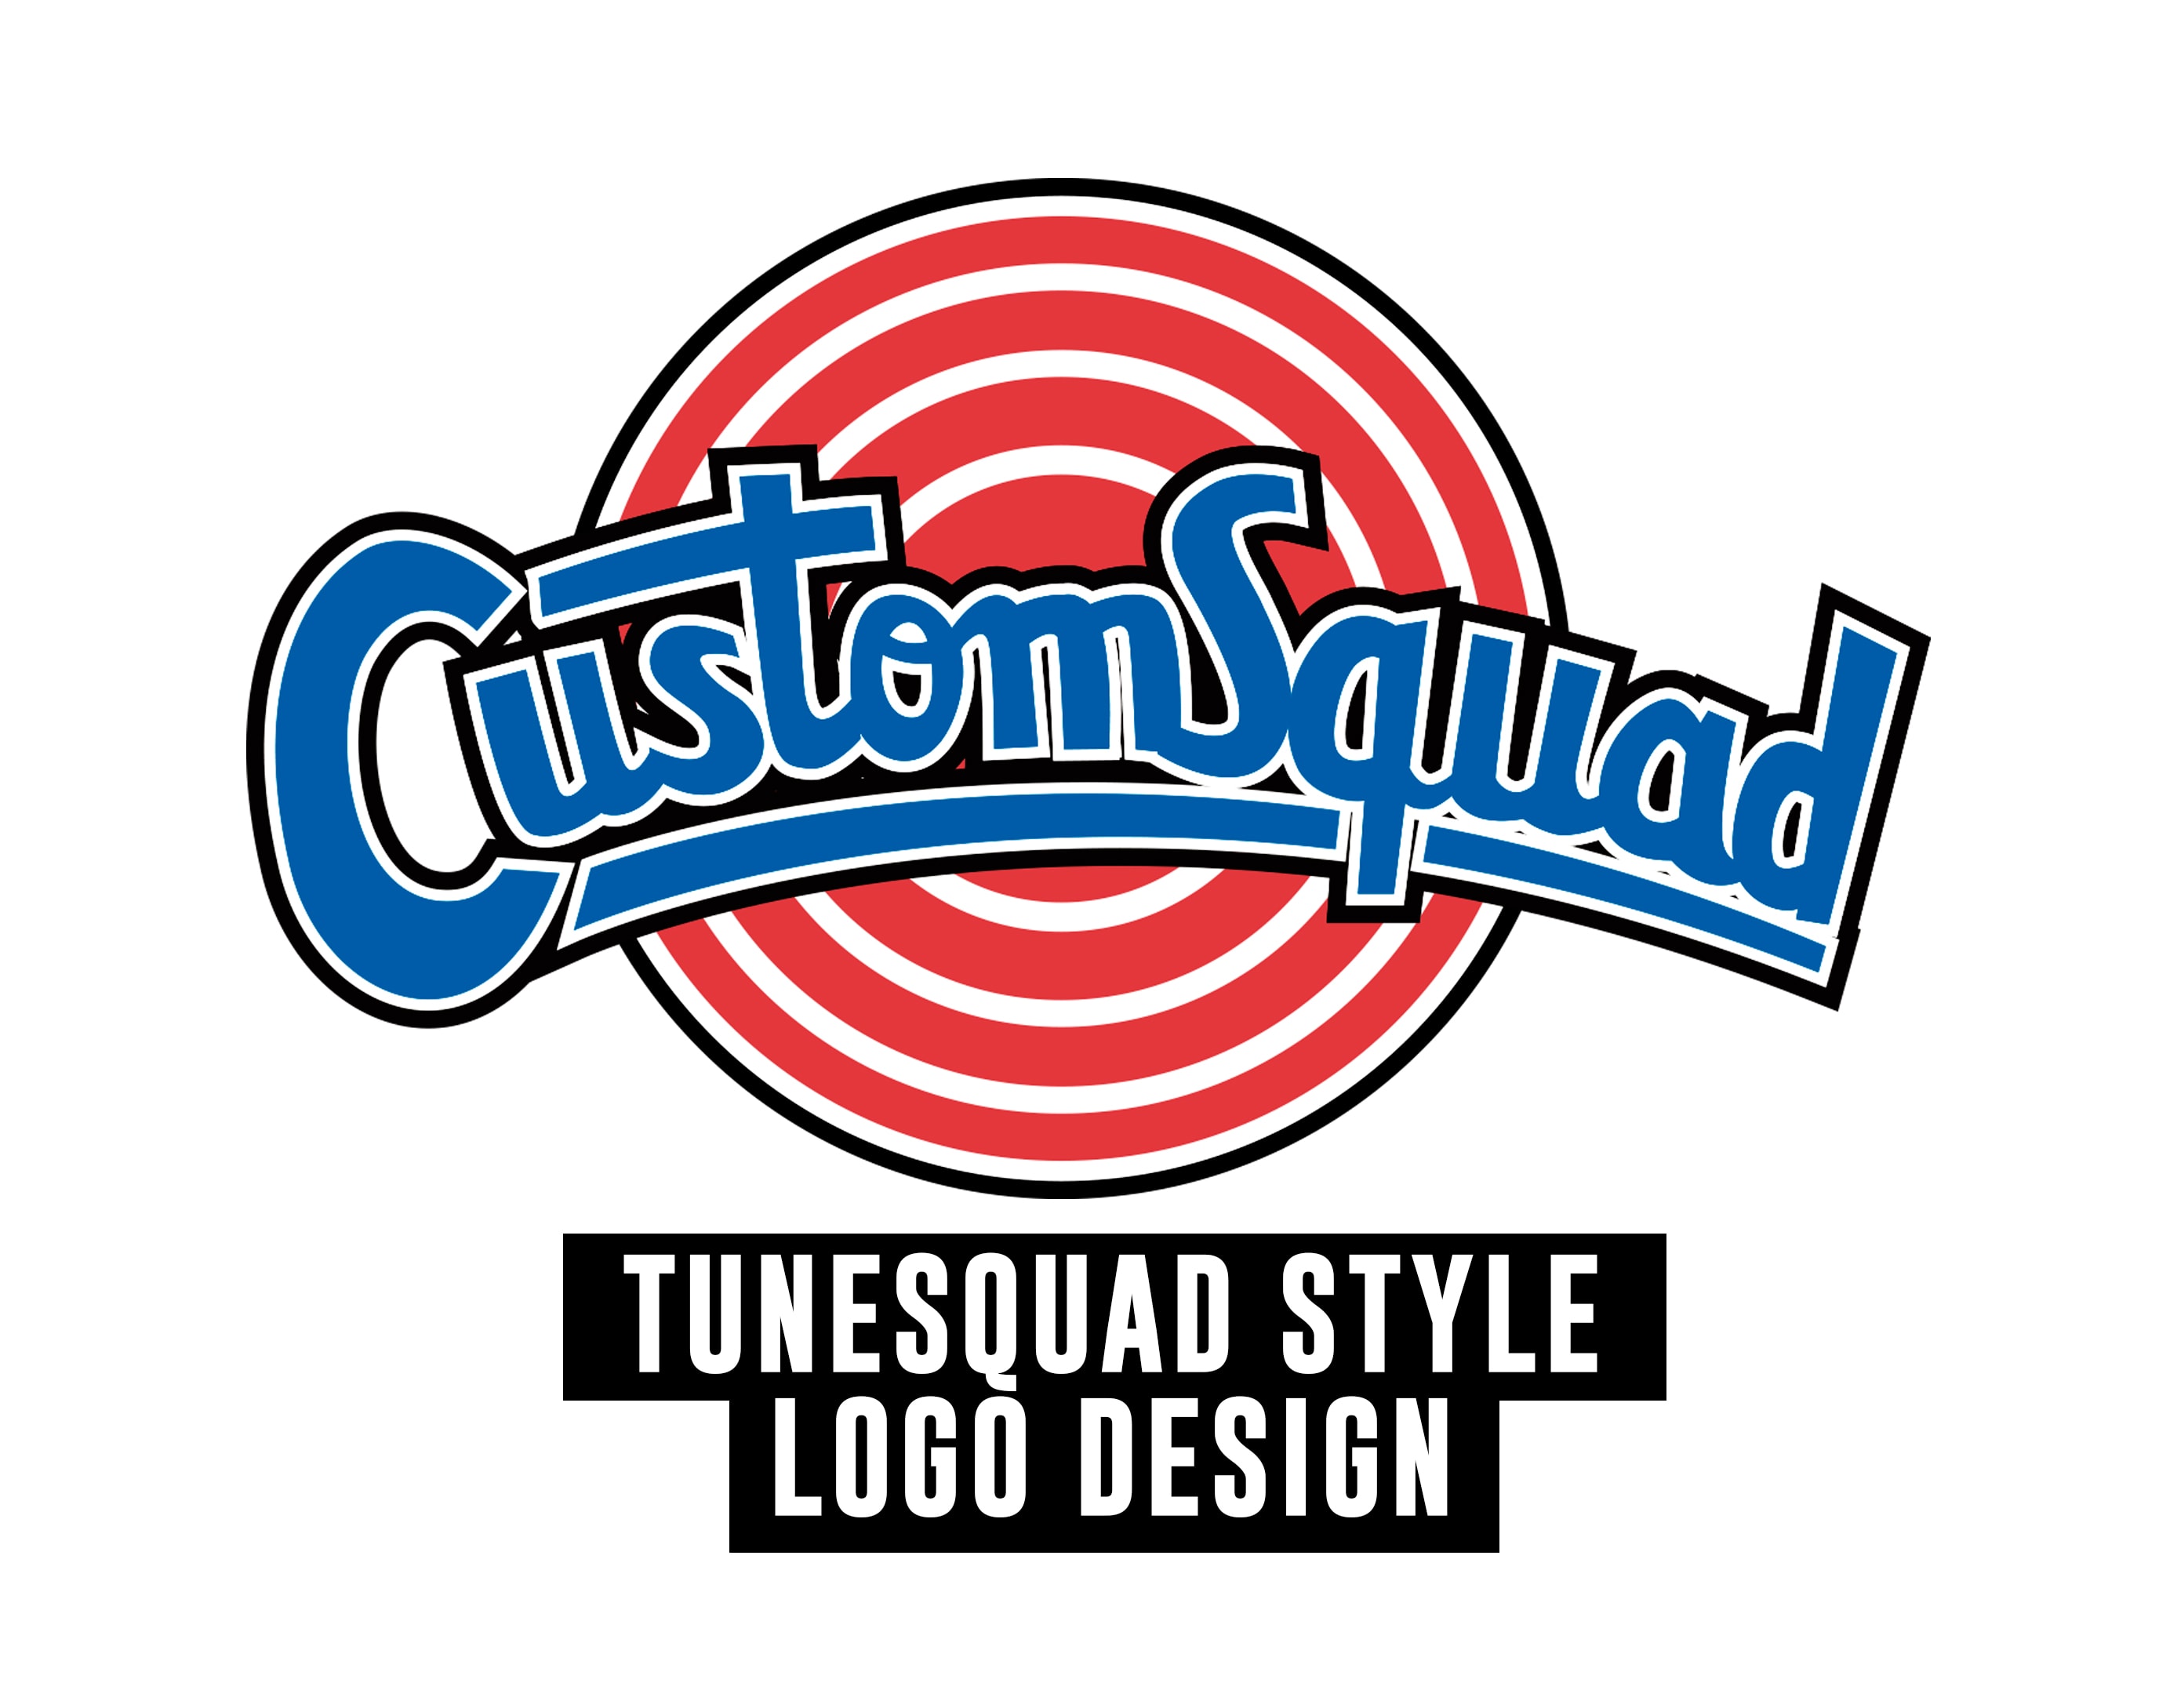 Tune squad. Tunes Squad логотип. Tune Squad Jersey. Tune Squad MCD. Intend logo.